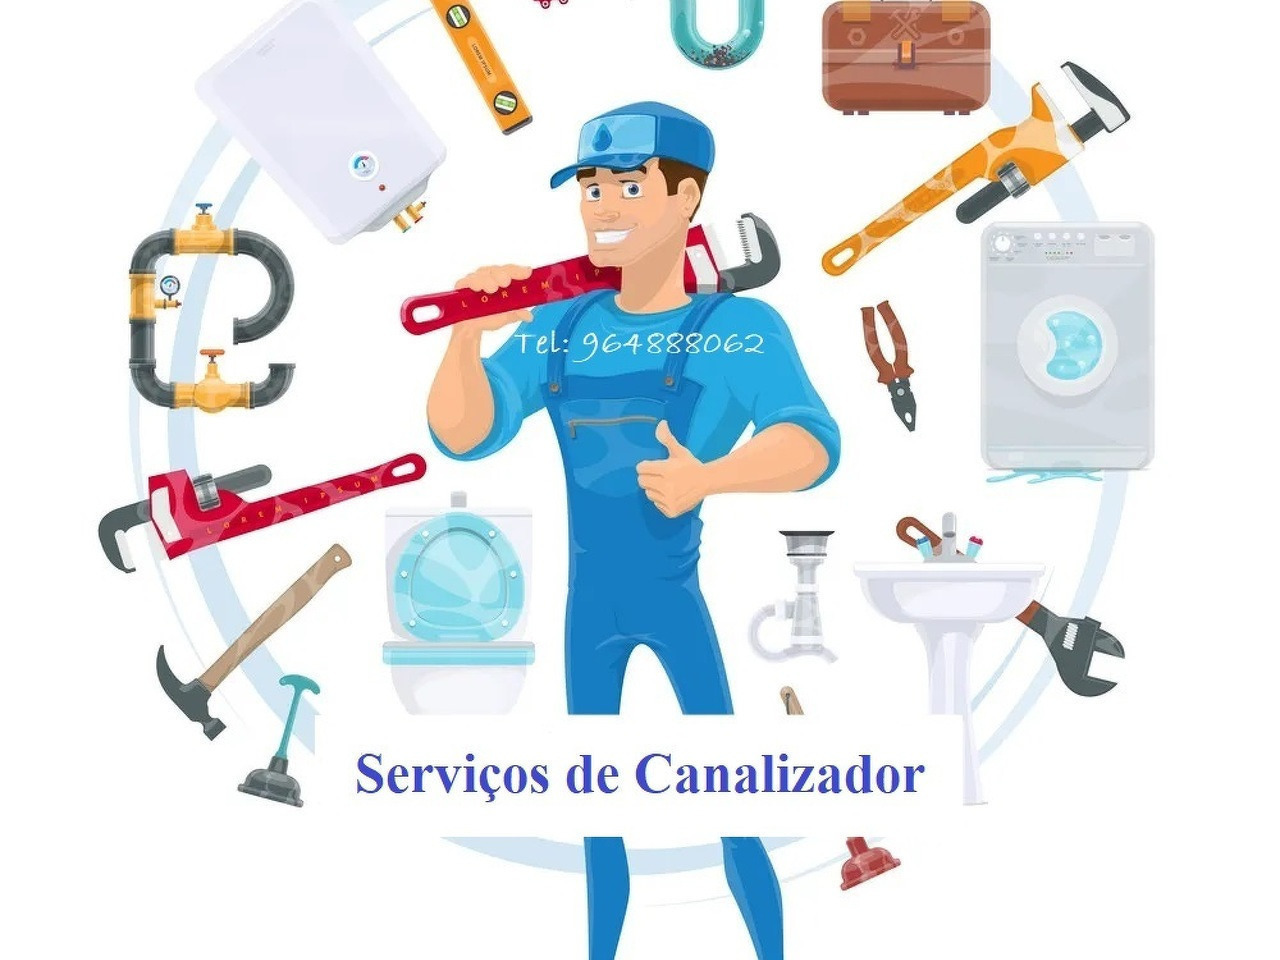 Canalização, serviços de canalizador. - 1